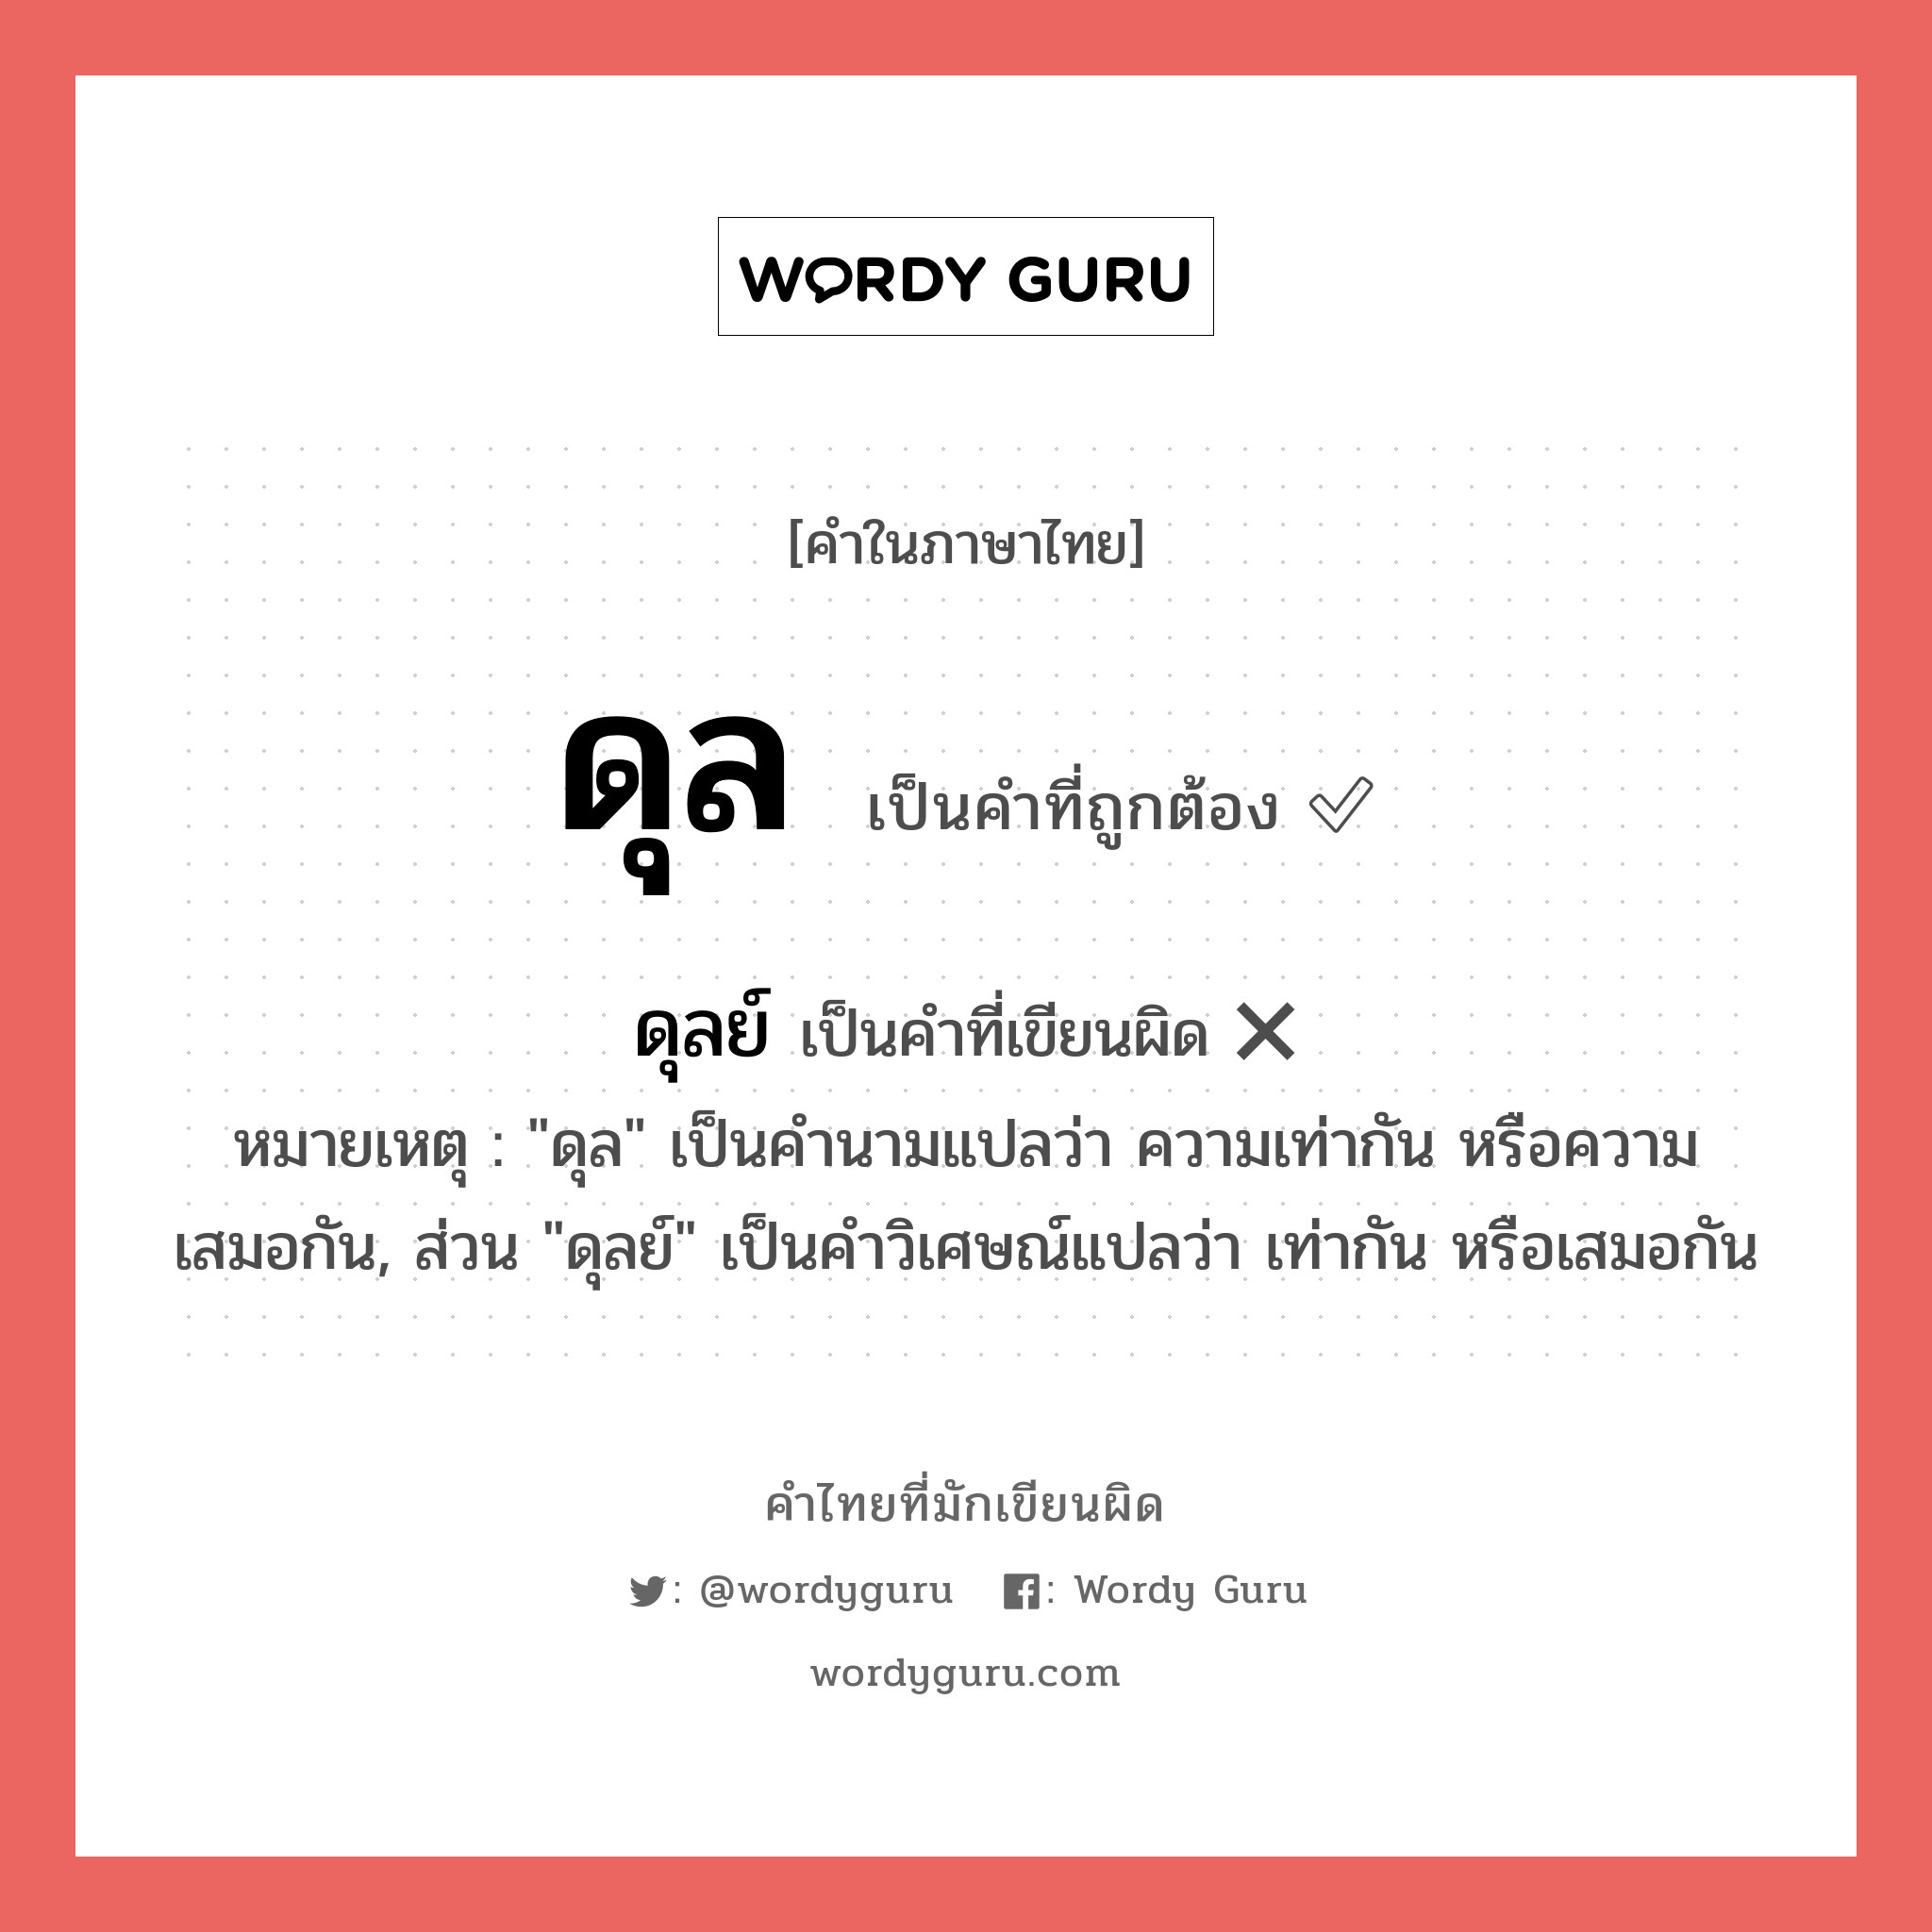 ดุลย์ หรือ ดุล คำไหนเขียนถูก?, คำในภาษาไทยที่มักเขียนผิด ดุลย์ คำที่ผิด ❌ ดุล หมายเหตุ "ดุล" เป็นคำนามแปลว่า ความเท่ากัน หรือความเสมอกัน, ส่วน "ดุลย์" เป็นคำวิเศษณ์แปลว่า เท่ากัน หรือเสมอกัน